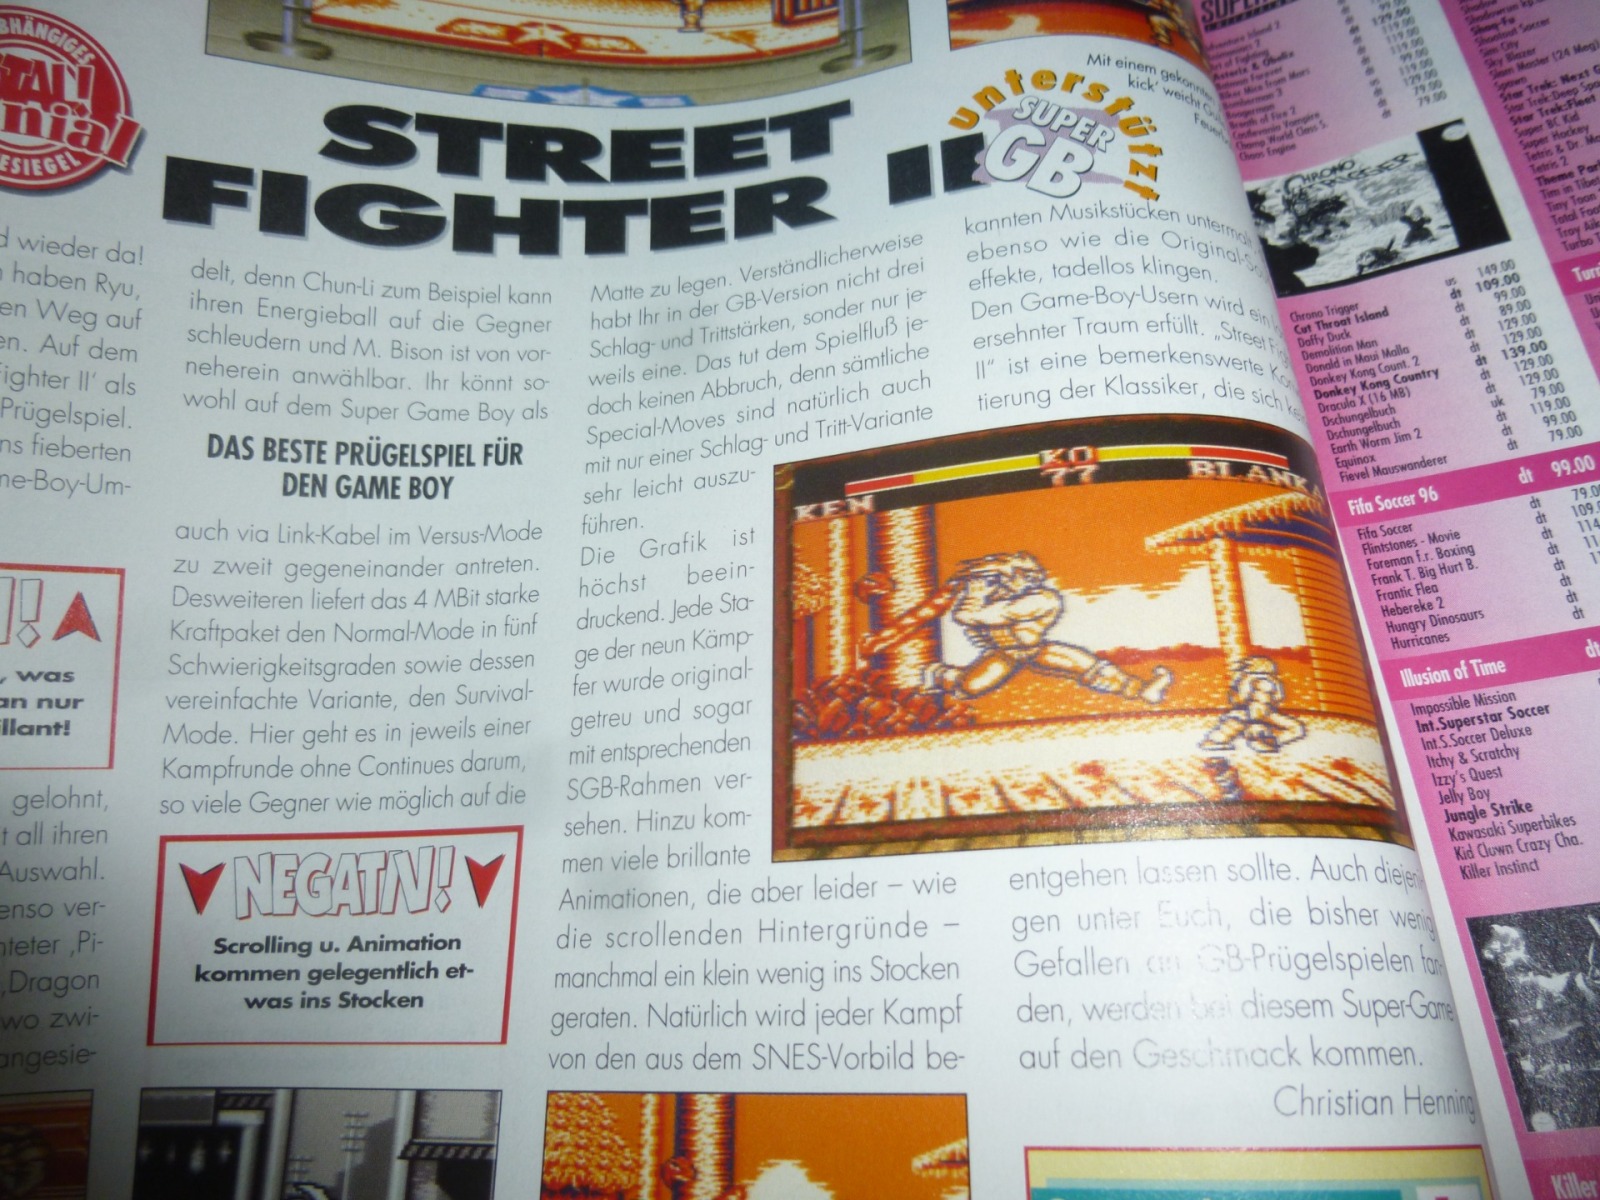 TOTAL Das unabhängige Magazin - 100 Nintendo - Ausgabe 2/96 1996 13